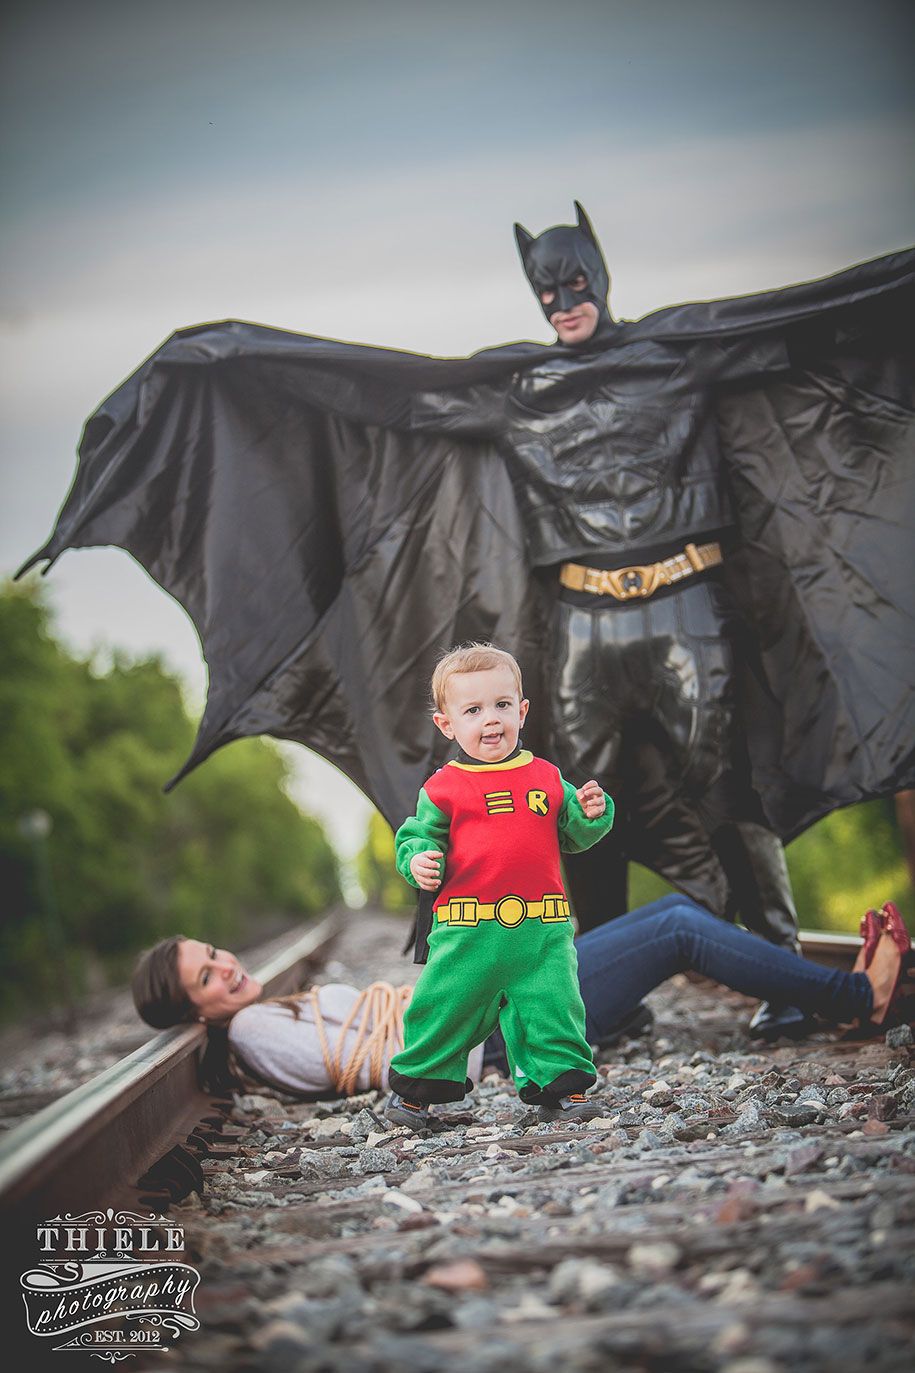 tēvs-dēls-pārsteigums-Betmens-Robina-fotosesija-eriks-tiele-13